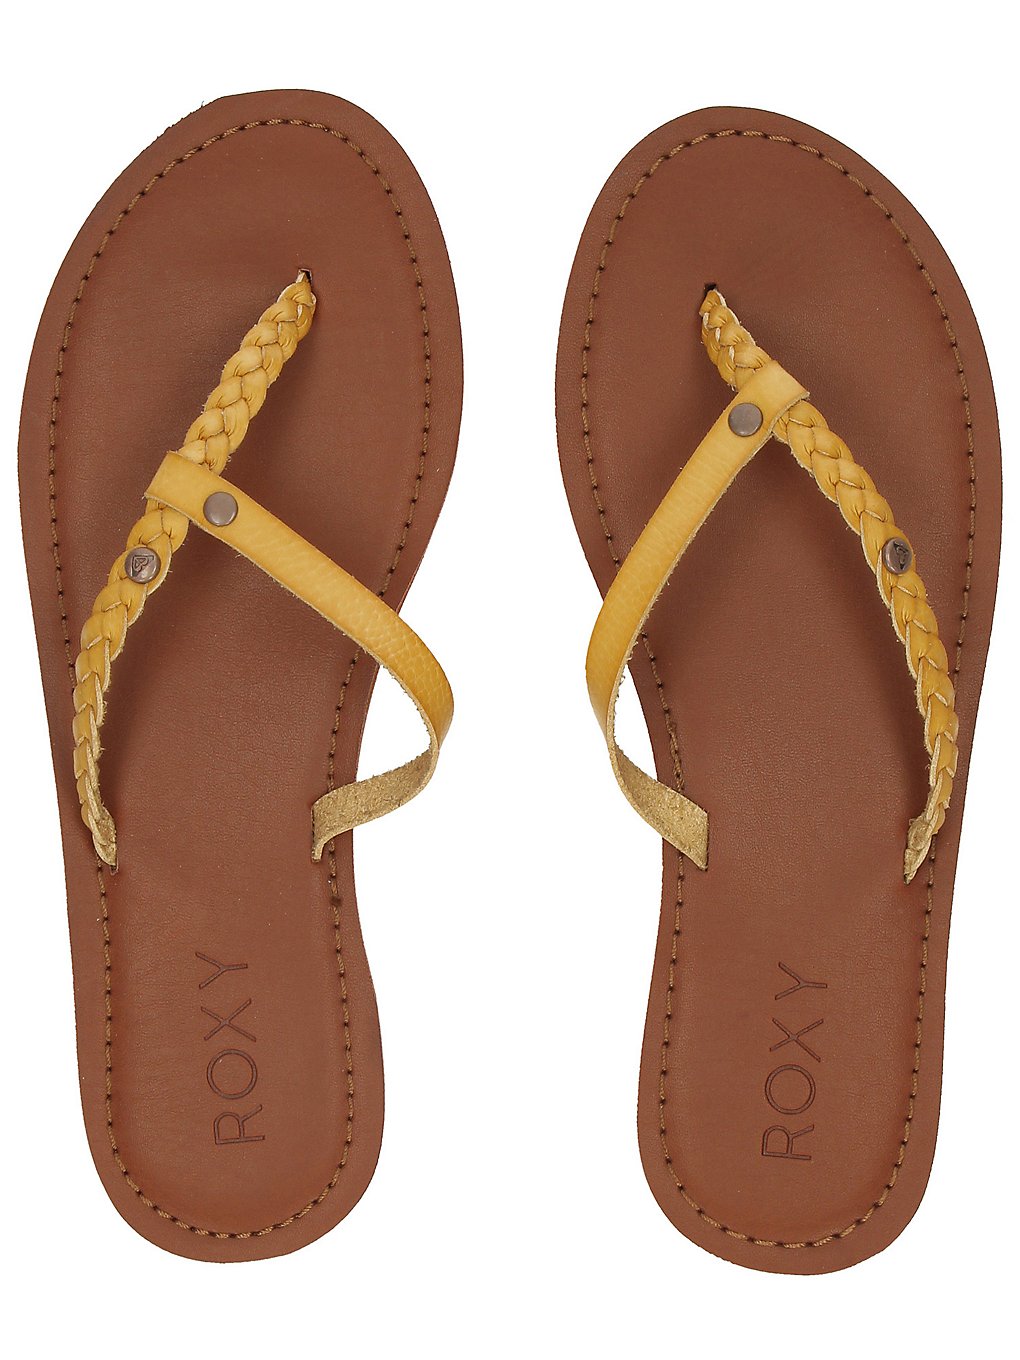 Roxy livia sandals keltainen, roxy